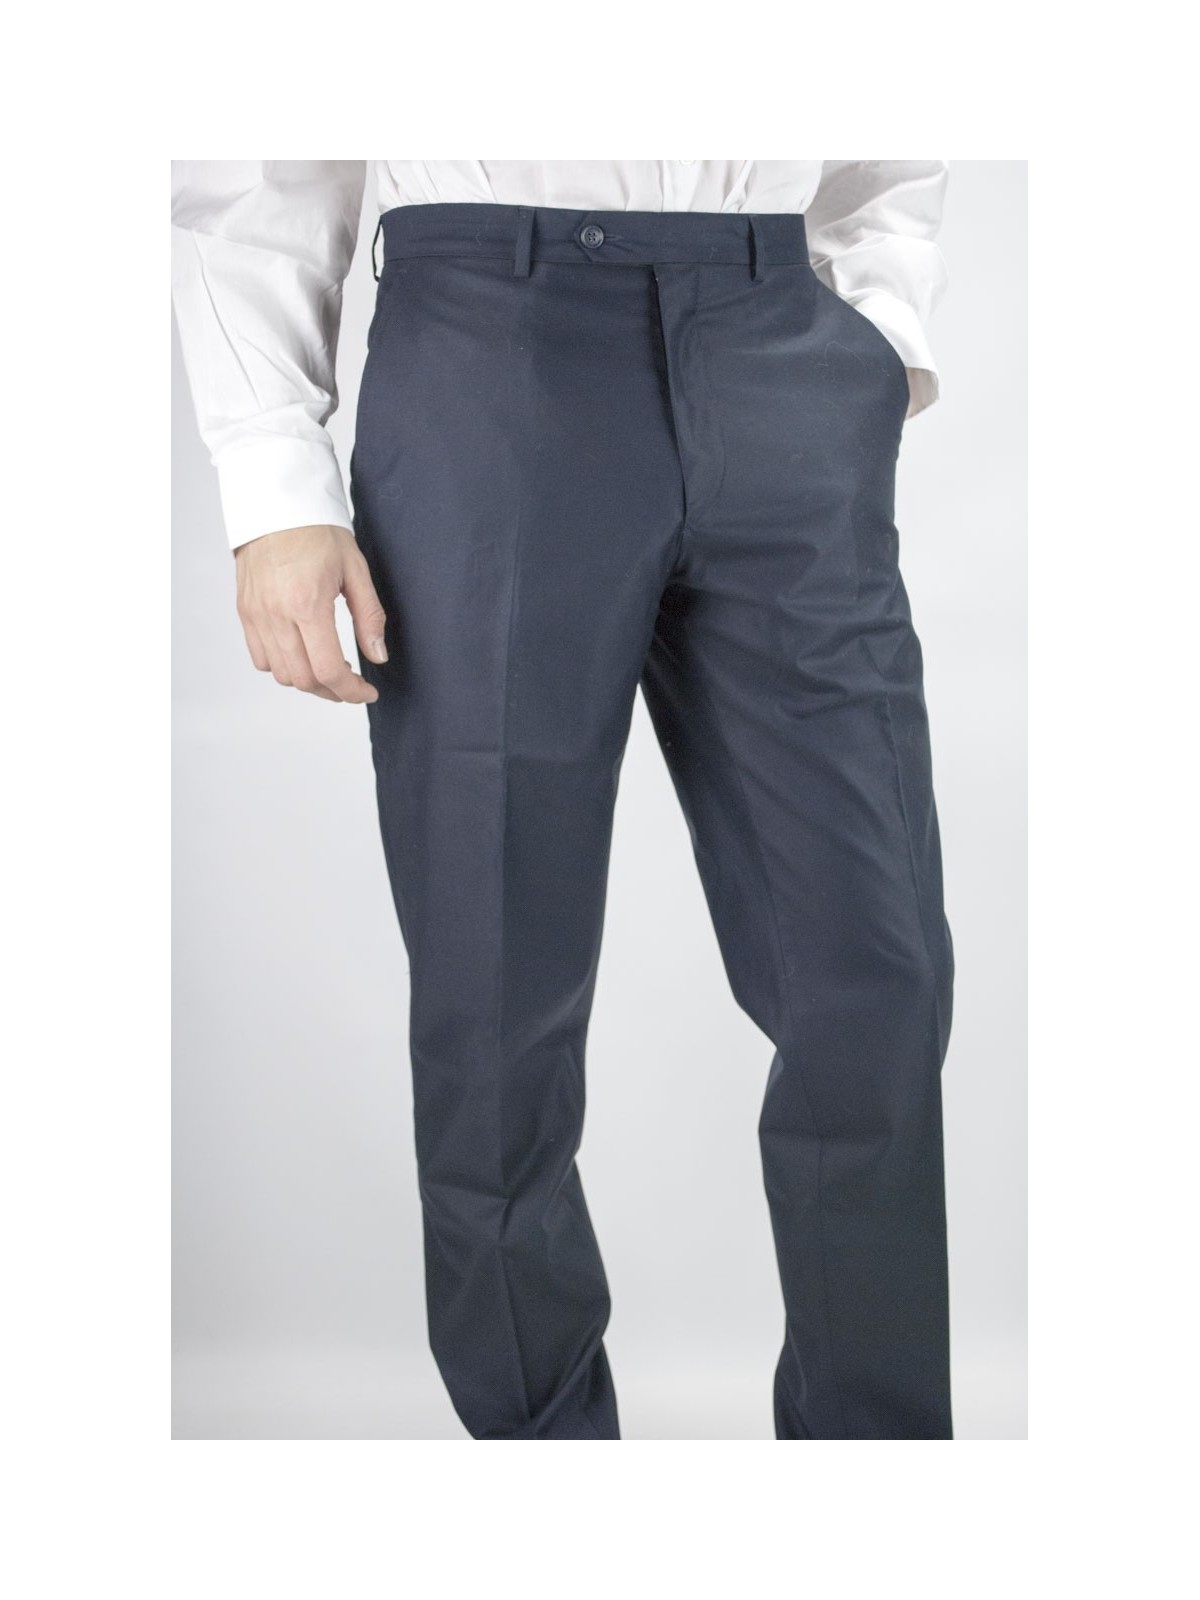 Pantaloni Uomo Classico taglia 46 Blu Scuro Raso Cotone - PE